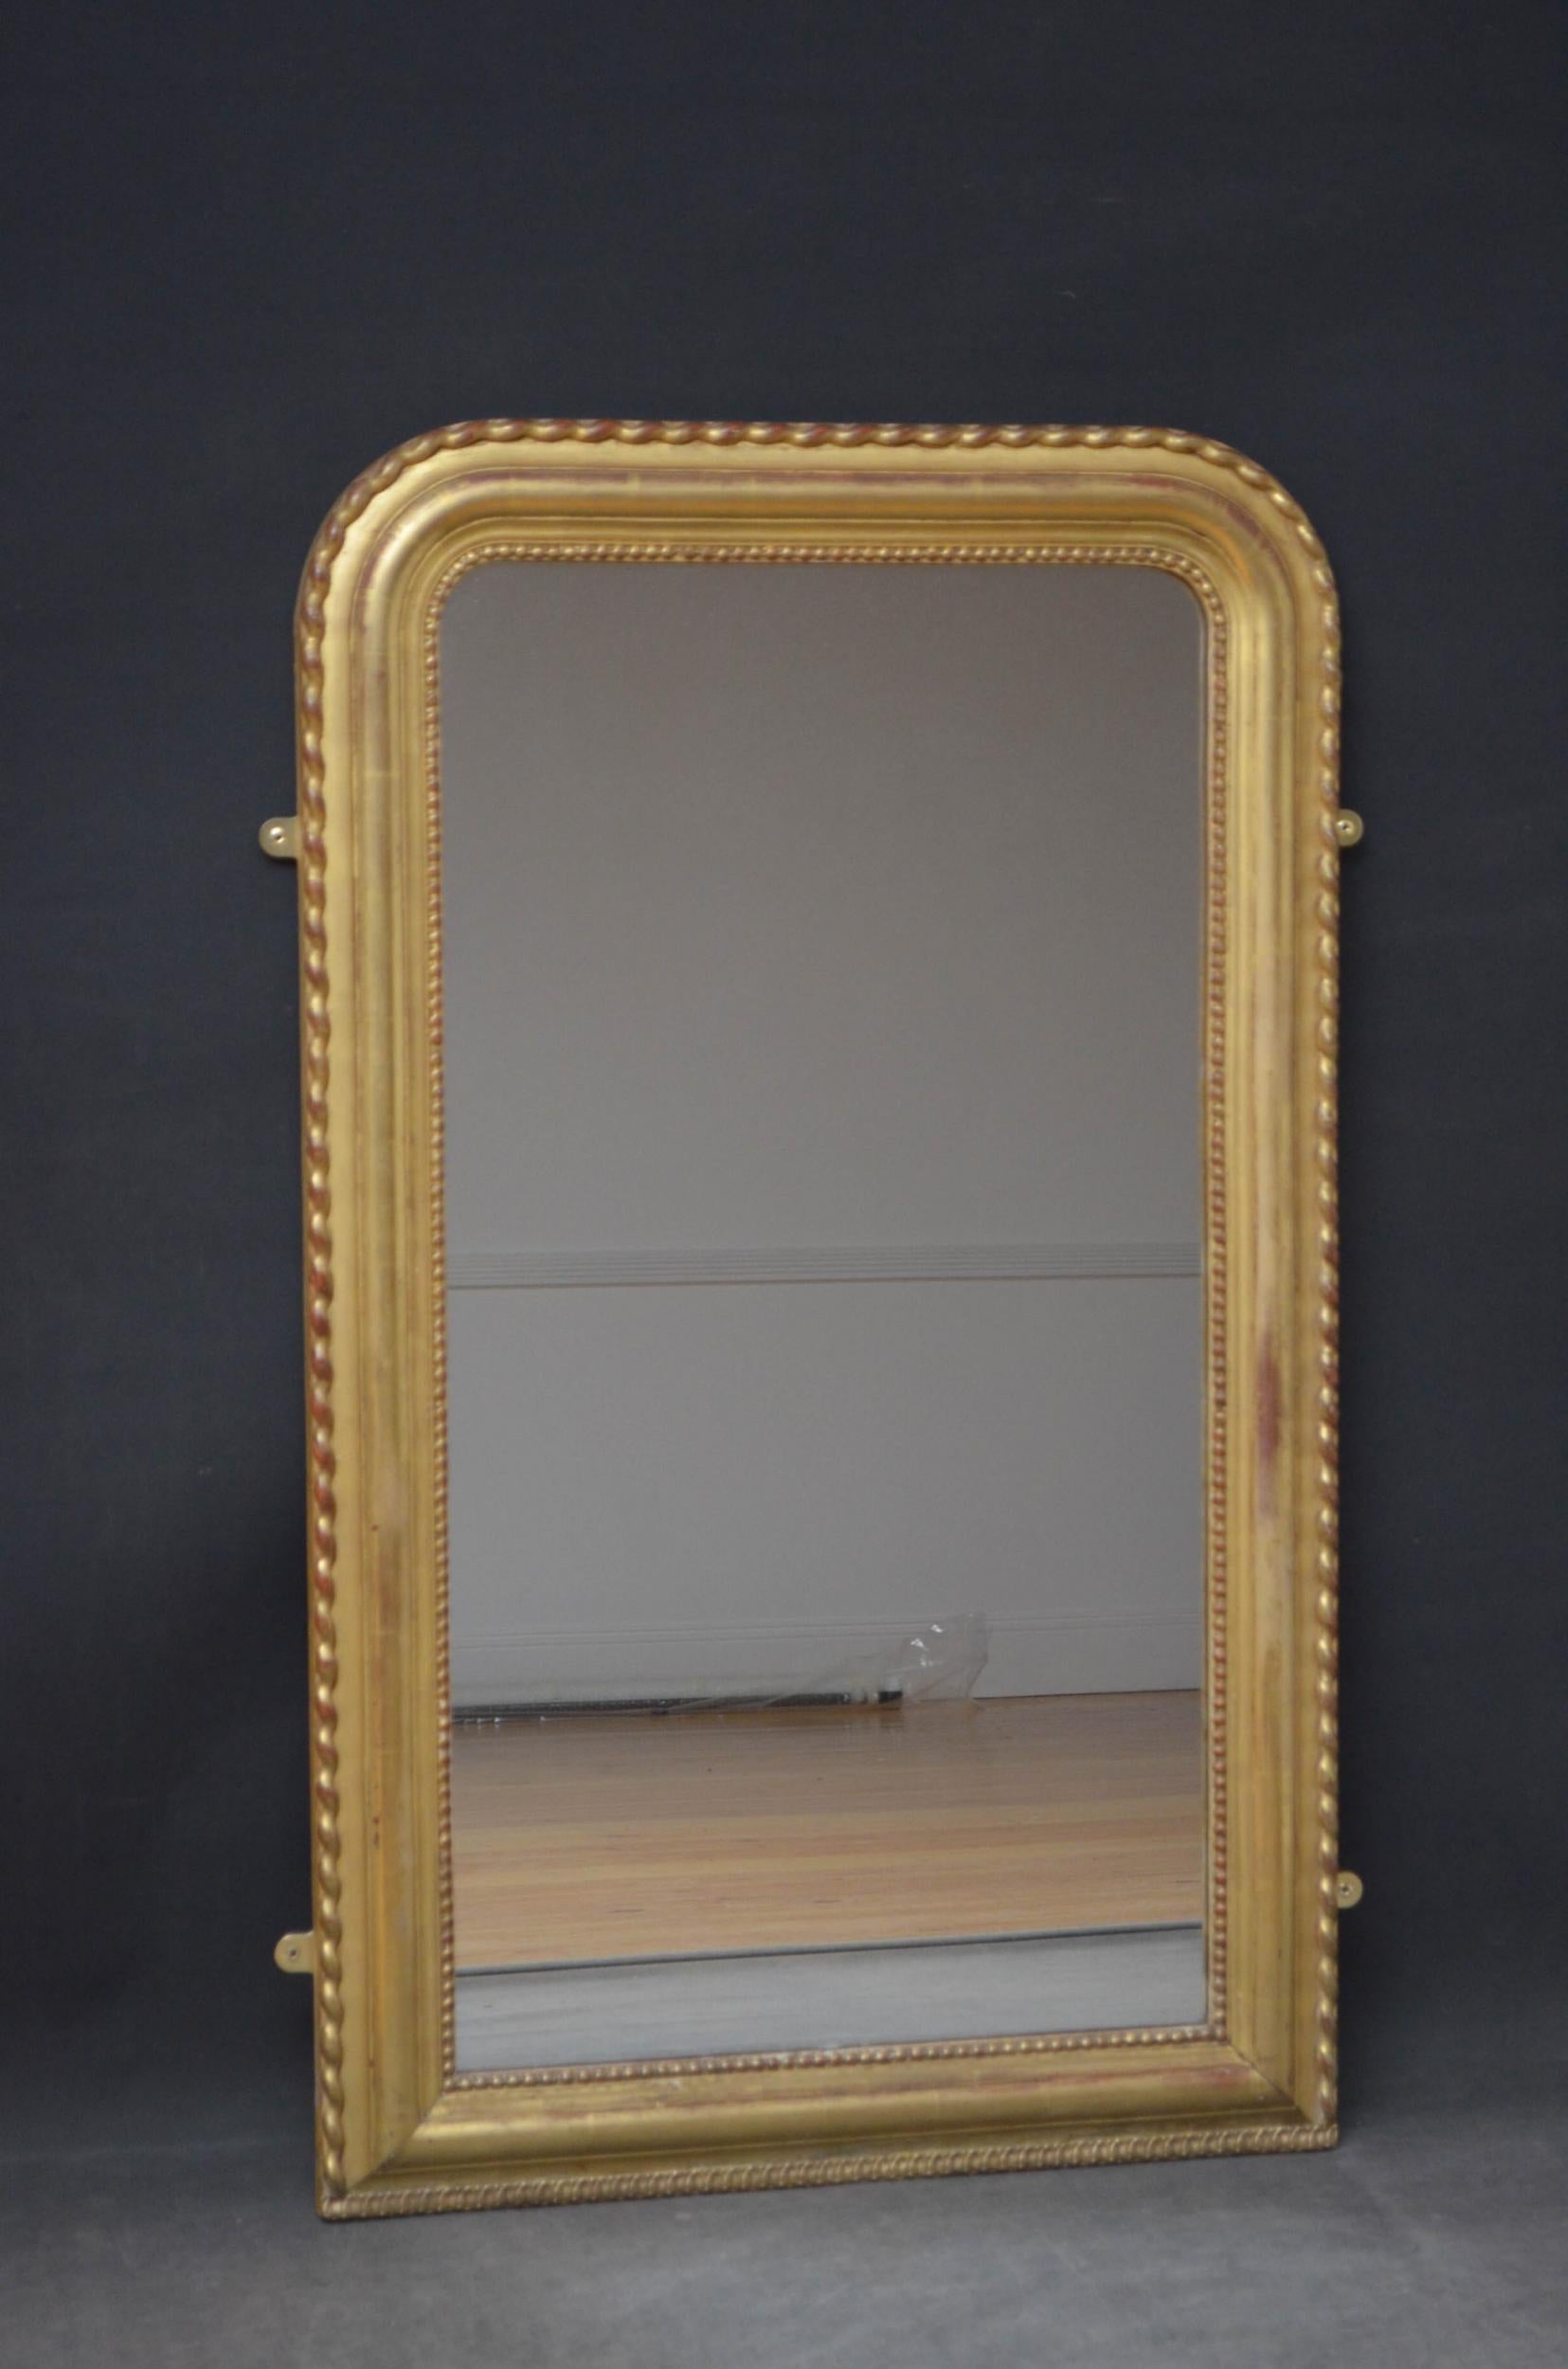 Sn4934 Miroir français du 19ème siècle, avec verre d'origine avec un peu de rouille et d'éclat dans un cadre perlé et moulé avec des remplacements mineurs et une décoration ondulée sur le bord extérieur. Ce miroir ancien conserve son verre